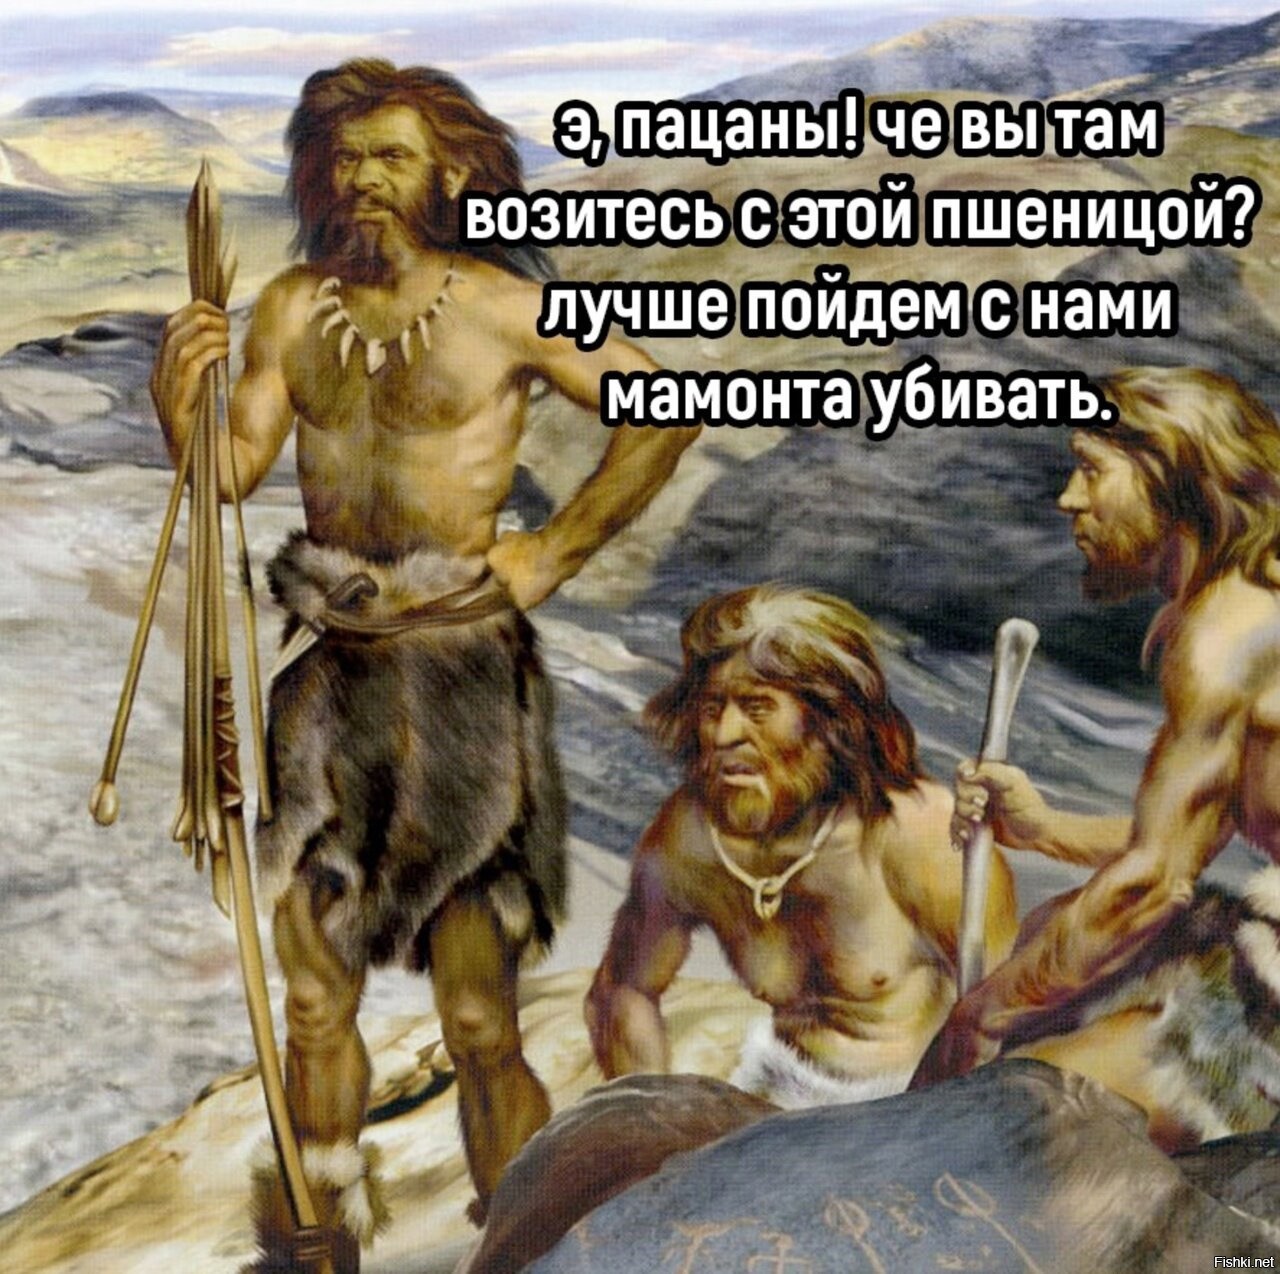 Первобытная правда. Неандерталец палеолит. Первобытные люди. Древние люди. Древний человек.